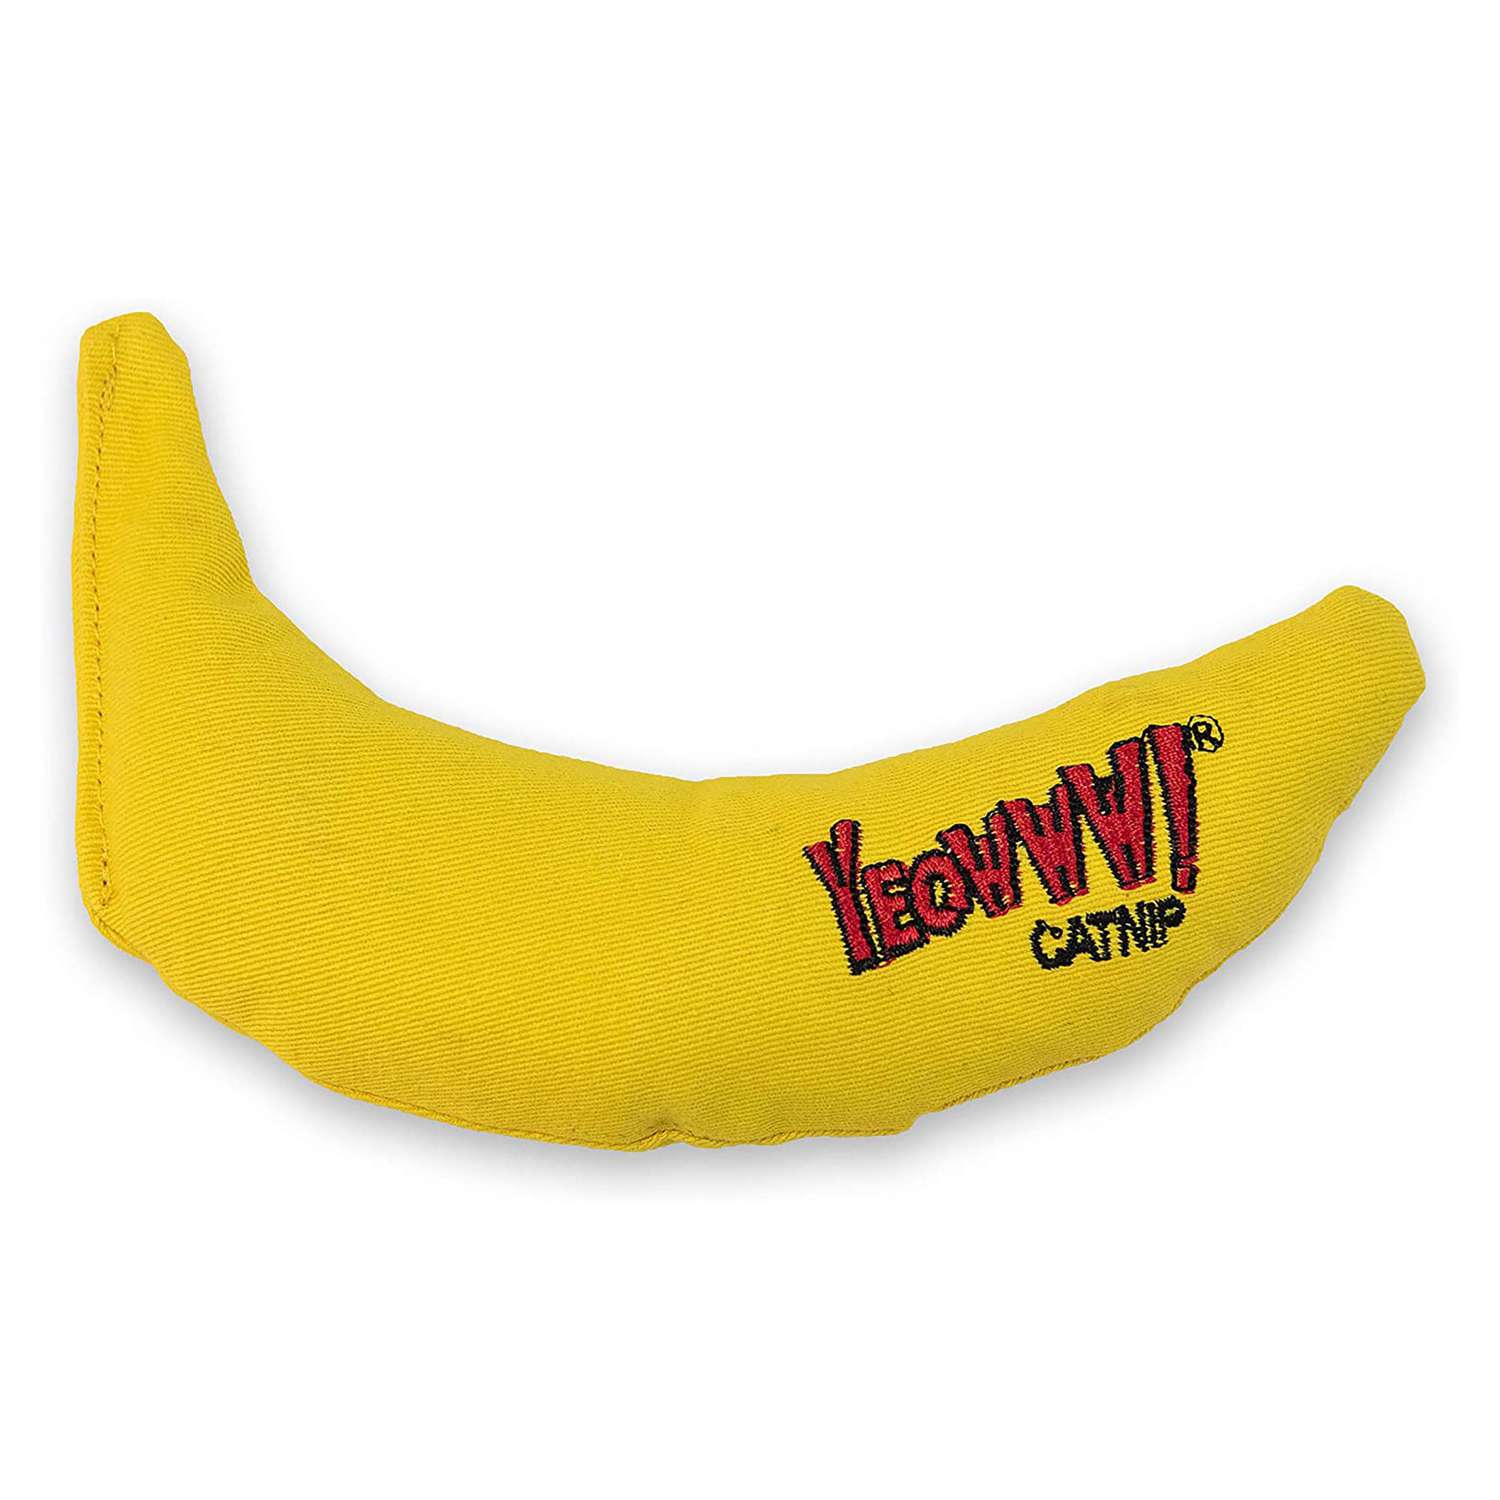 Yellow banana cat toy